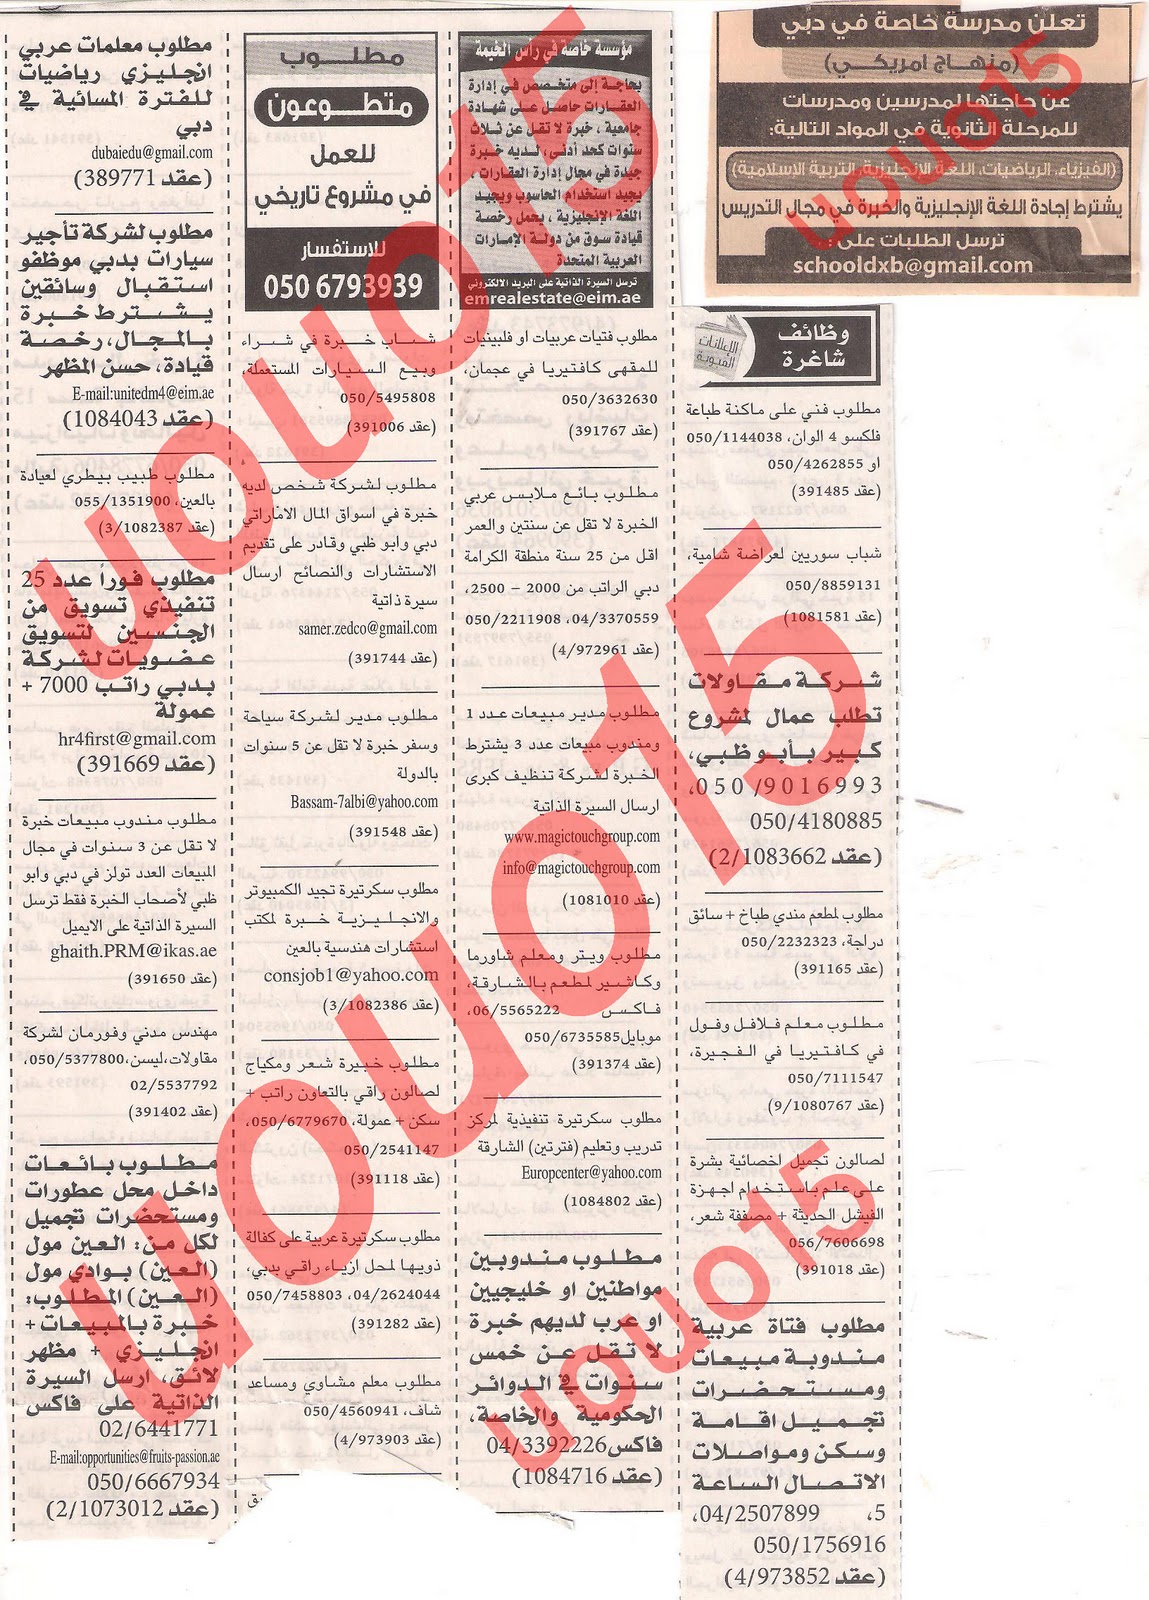 وظائف شاغرة من جريدة الخليج الجمعة 9\12\2011  Picture+028